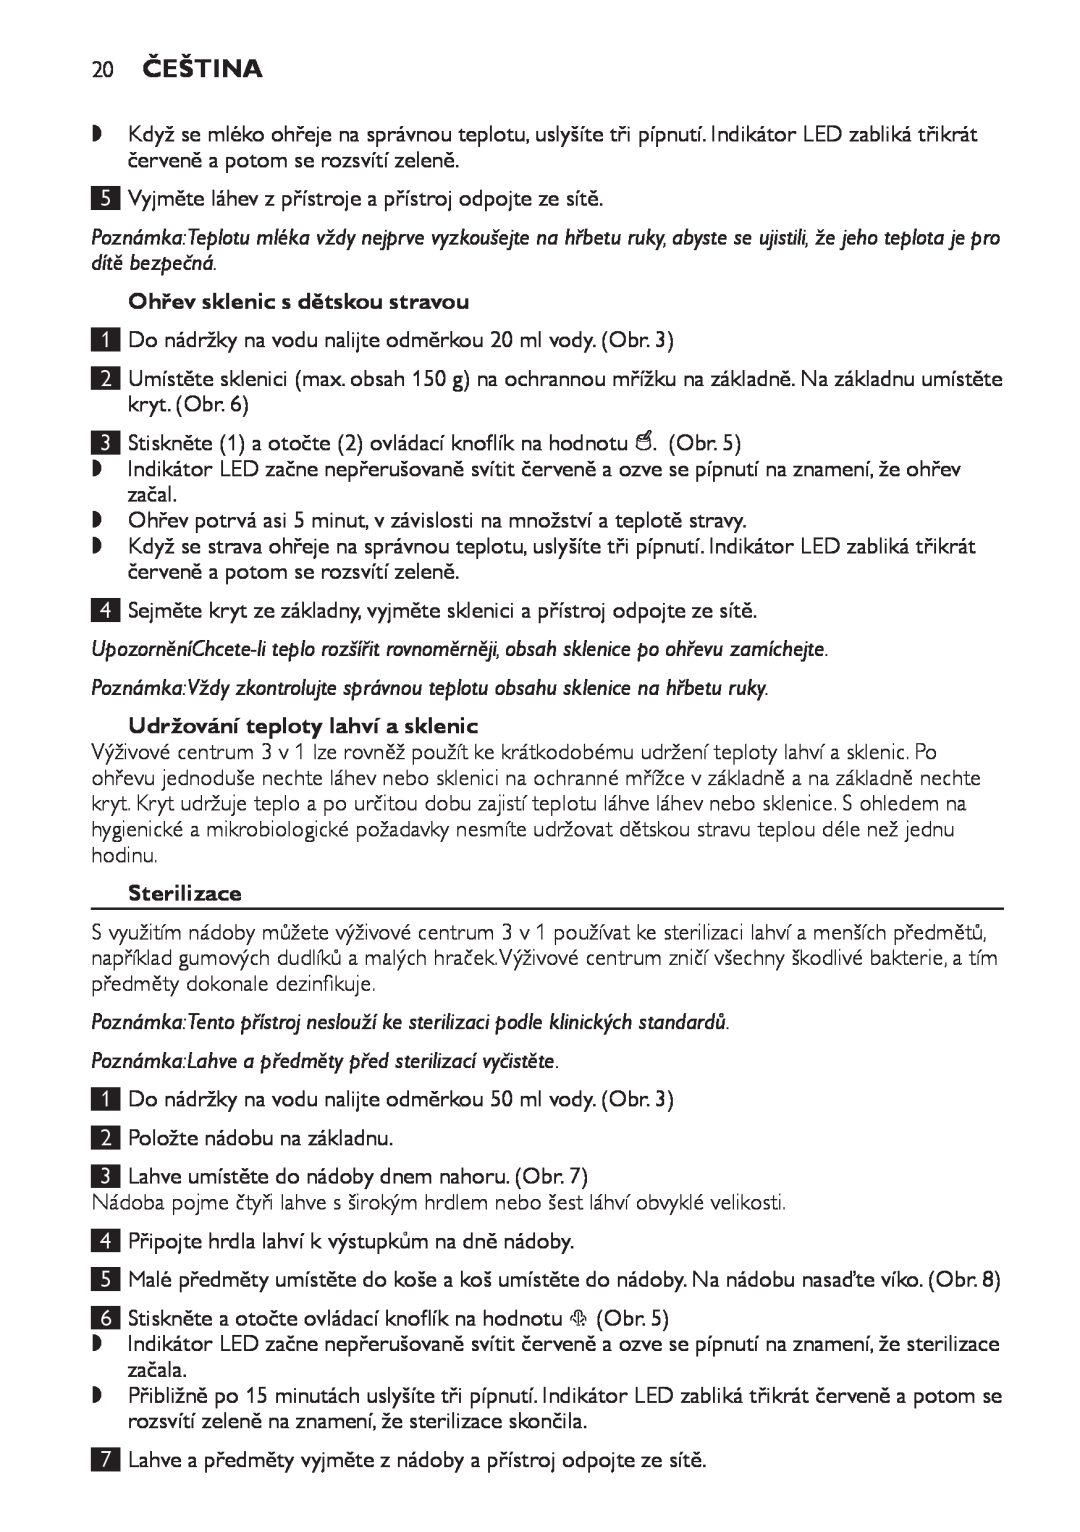 Philips SCF280 manual 20 Čeština, Ohřev sklenic s dětskou stravou, Udržování teploty lahví a sklenic, Sterilizace 